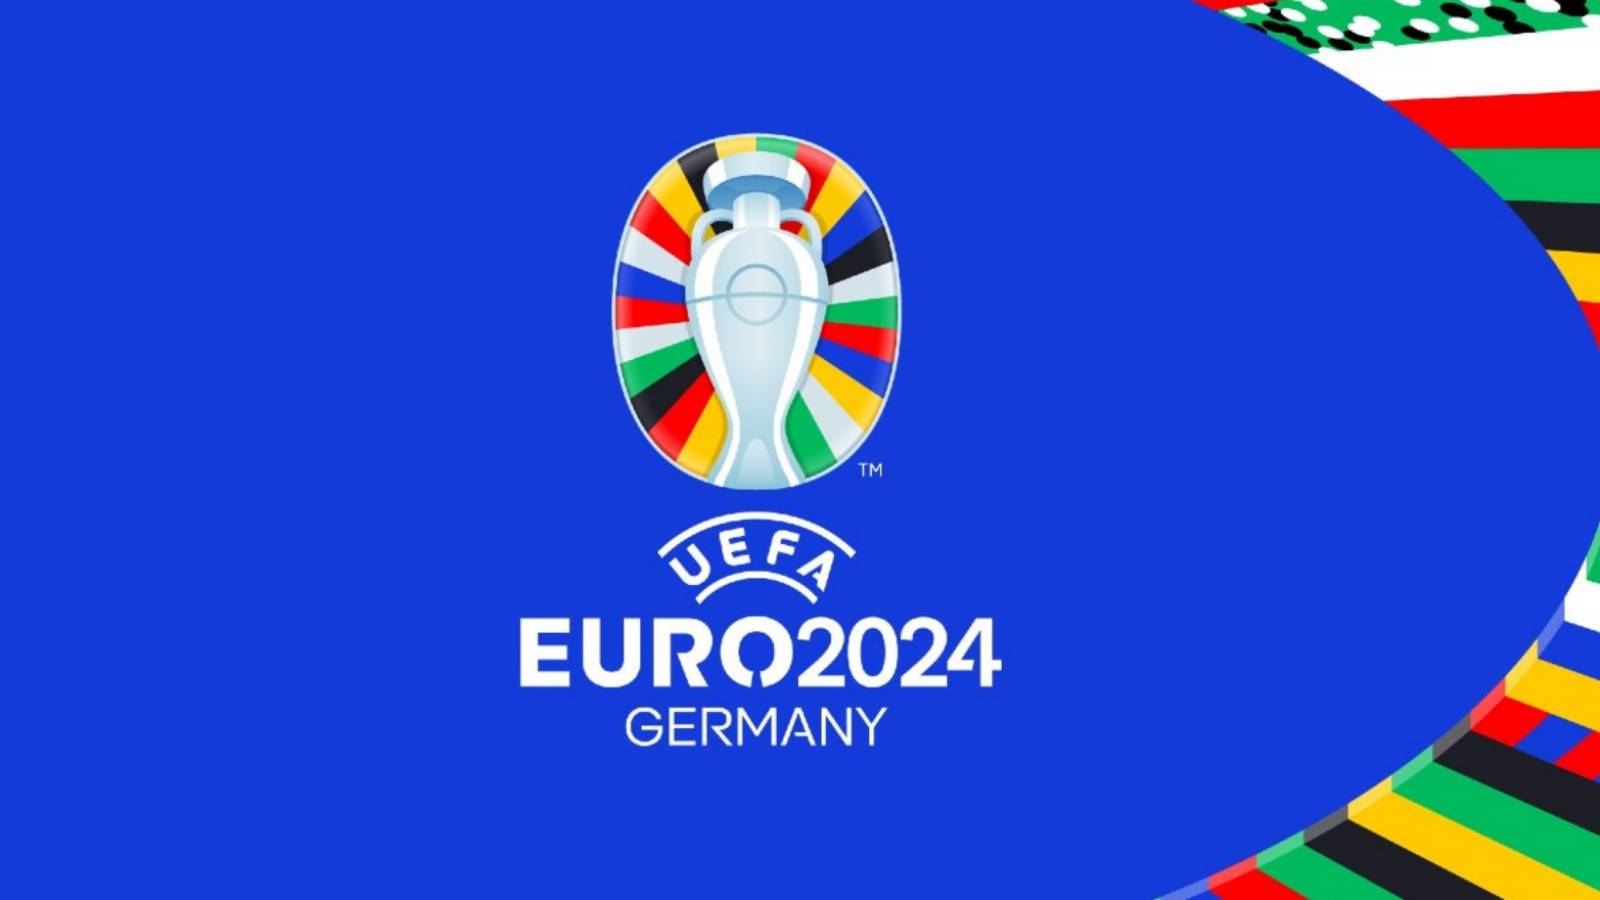 TIRAGE EN DIRECT DE L'EURO 2024 Groupe Roumanie Championnat d'Europe de Football 2024